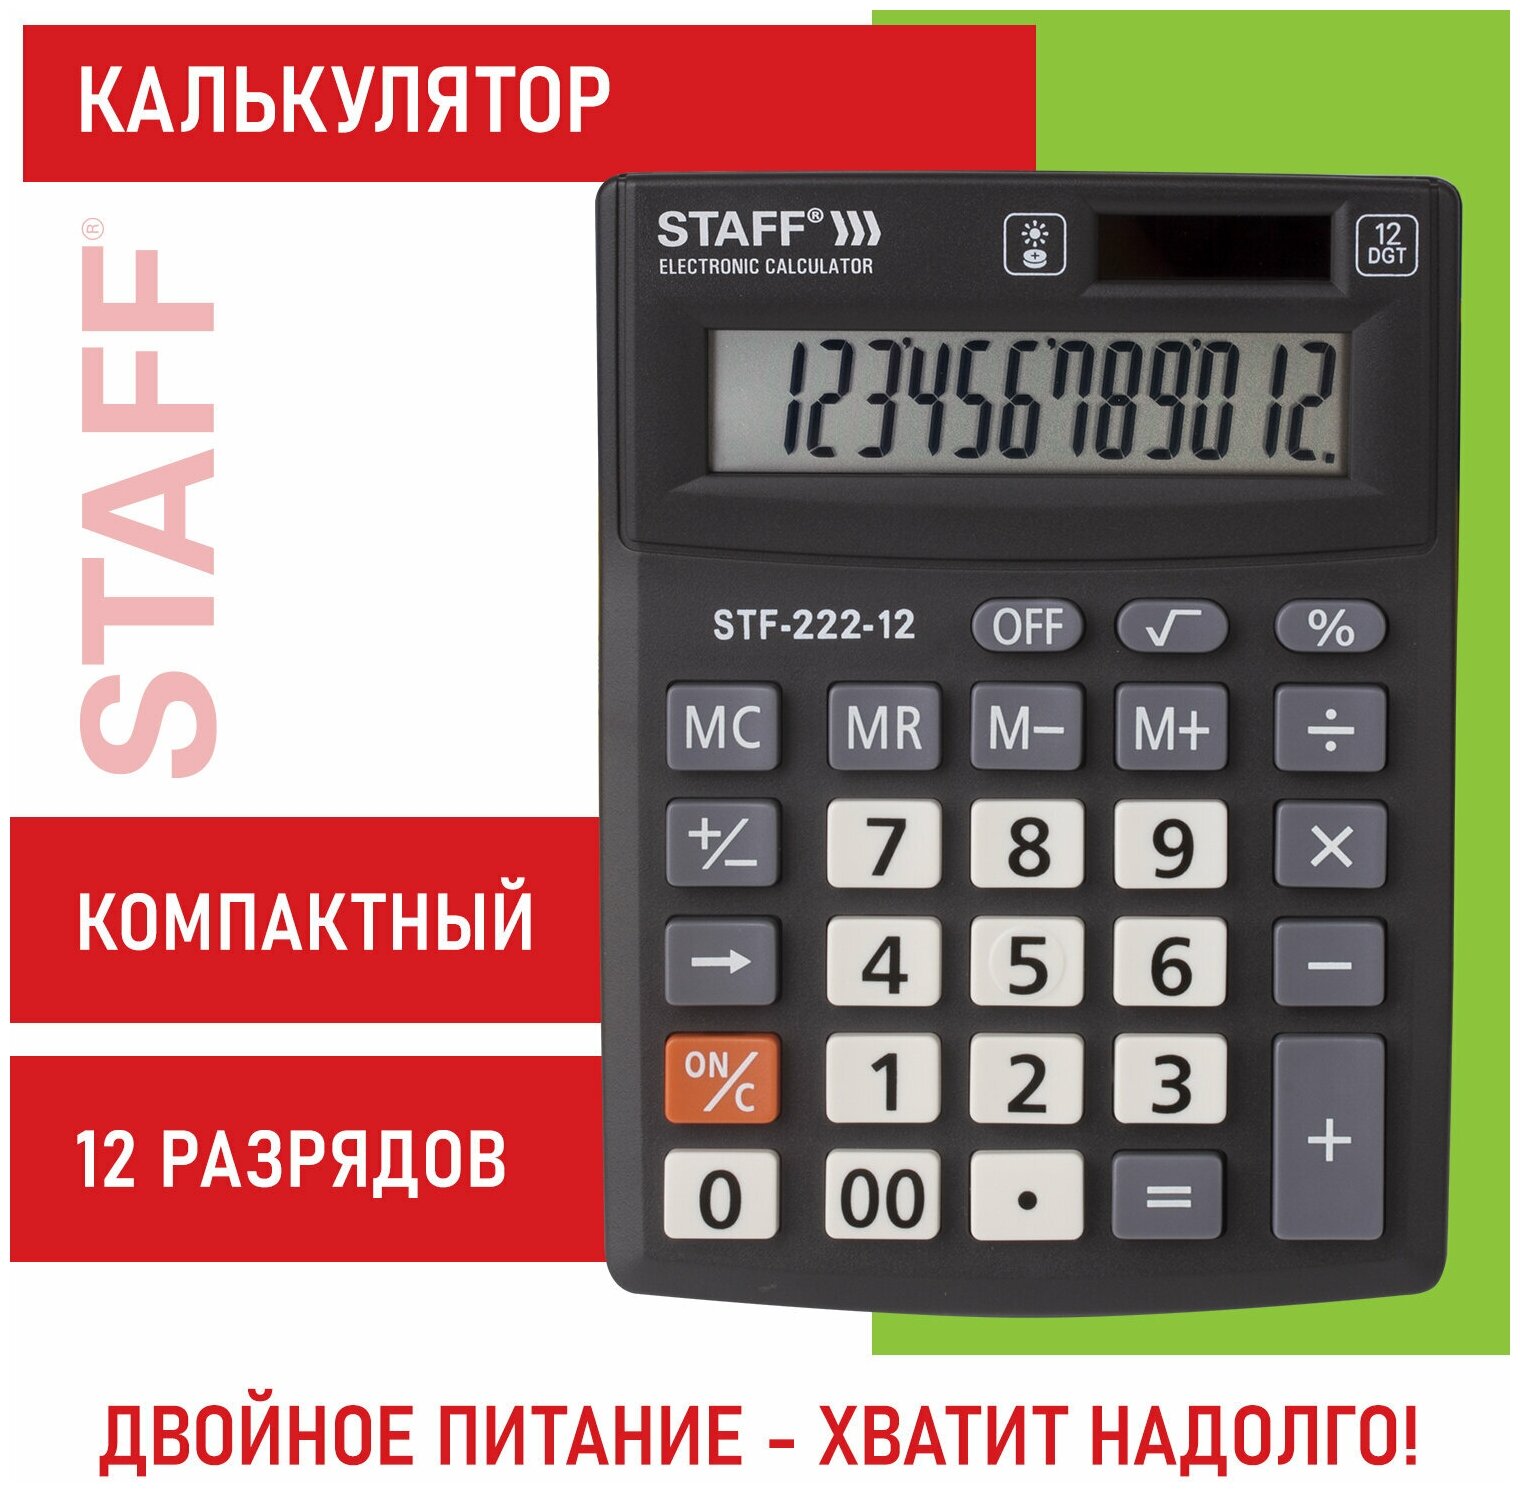 Калькулятор настольный электронный обычный Staff Plus STF-222, маленький, 12 разрядов, двойное питание